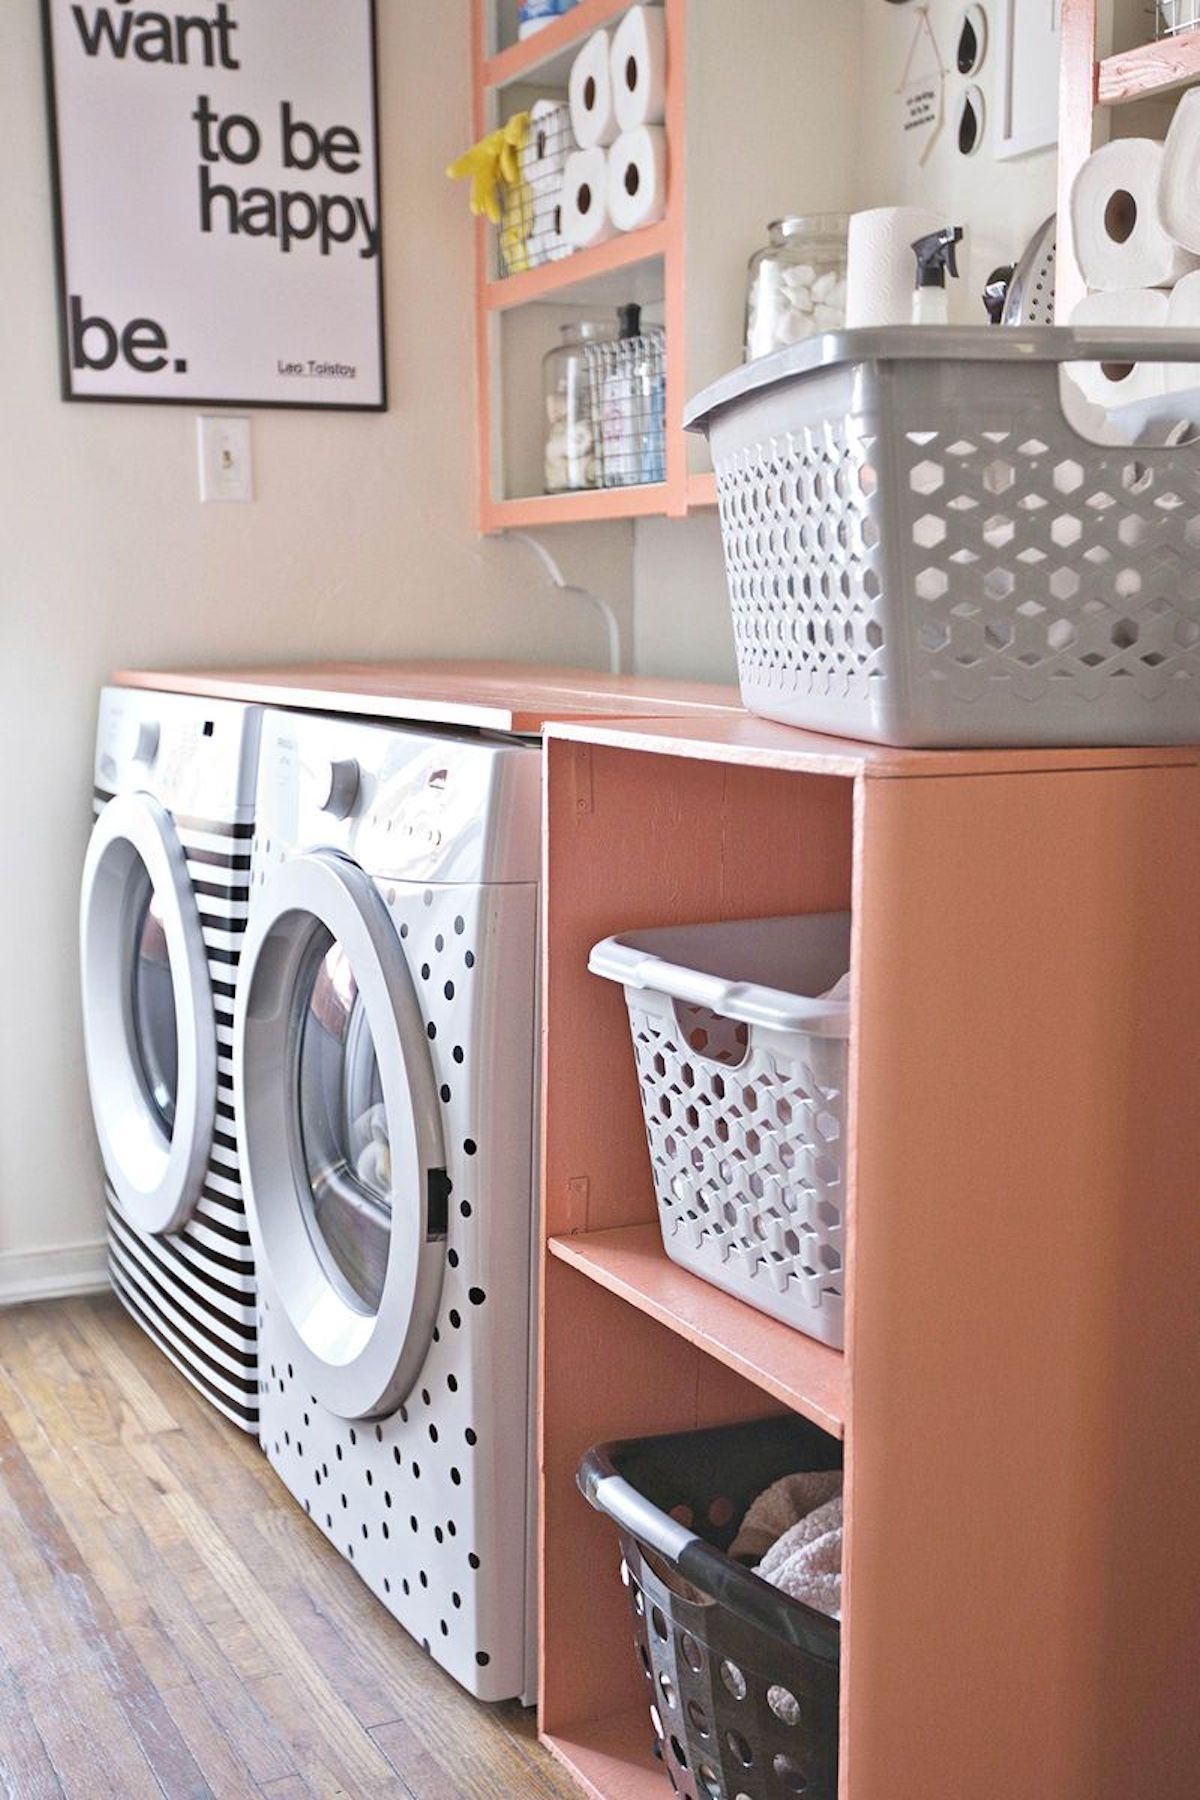 20 Creative Laundry Room Organization Ideas - Happy Organized Life